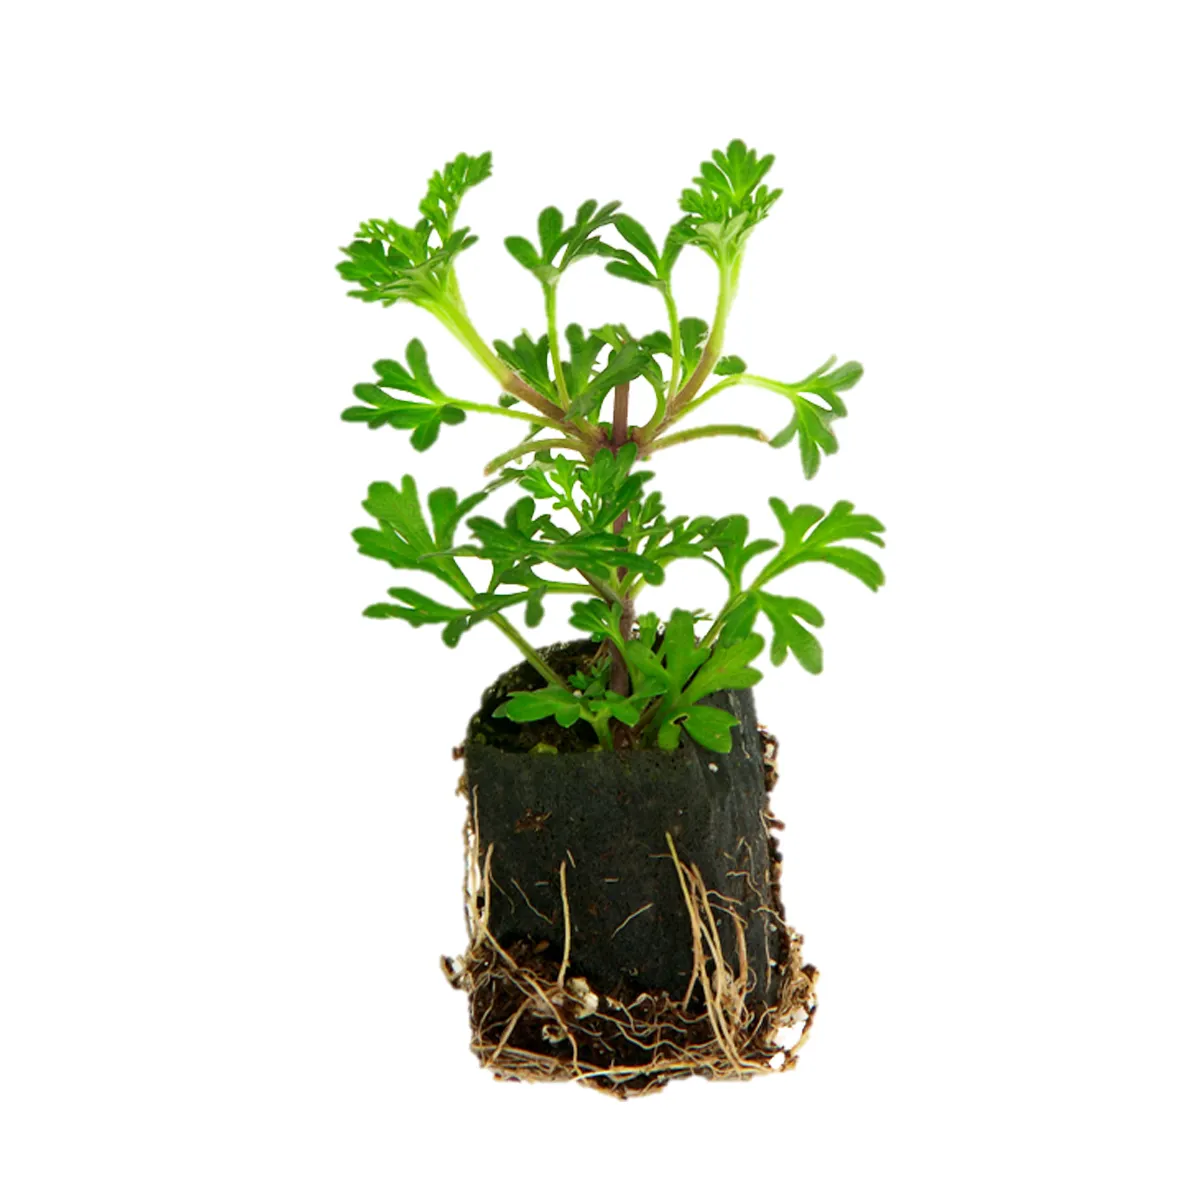 곱셈 플러그 성장 플러그 묘목 FERTISS 플러그 벌크 3x5 식물 화분 정원 씨앗 시작 성장 정원 식물 번식